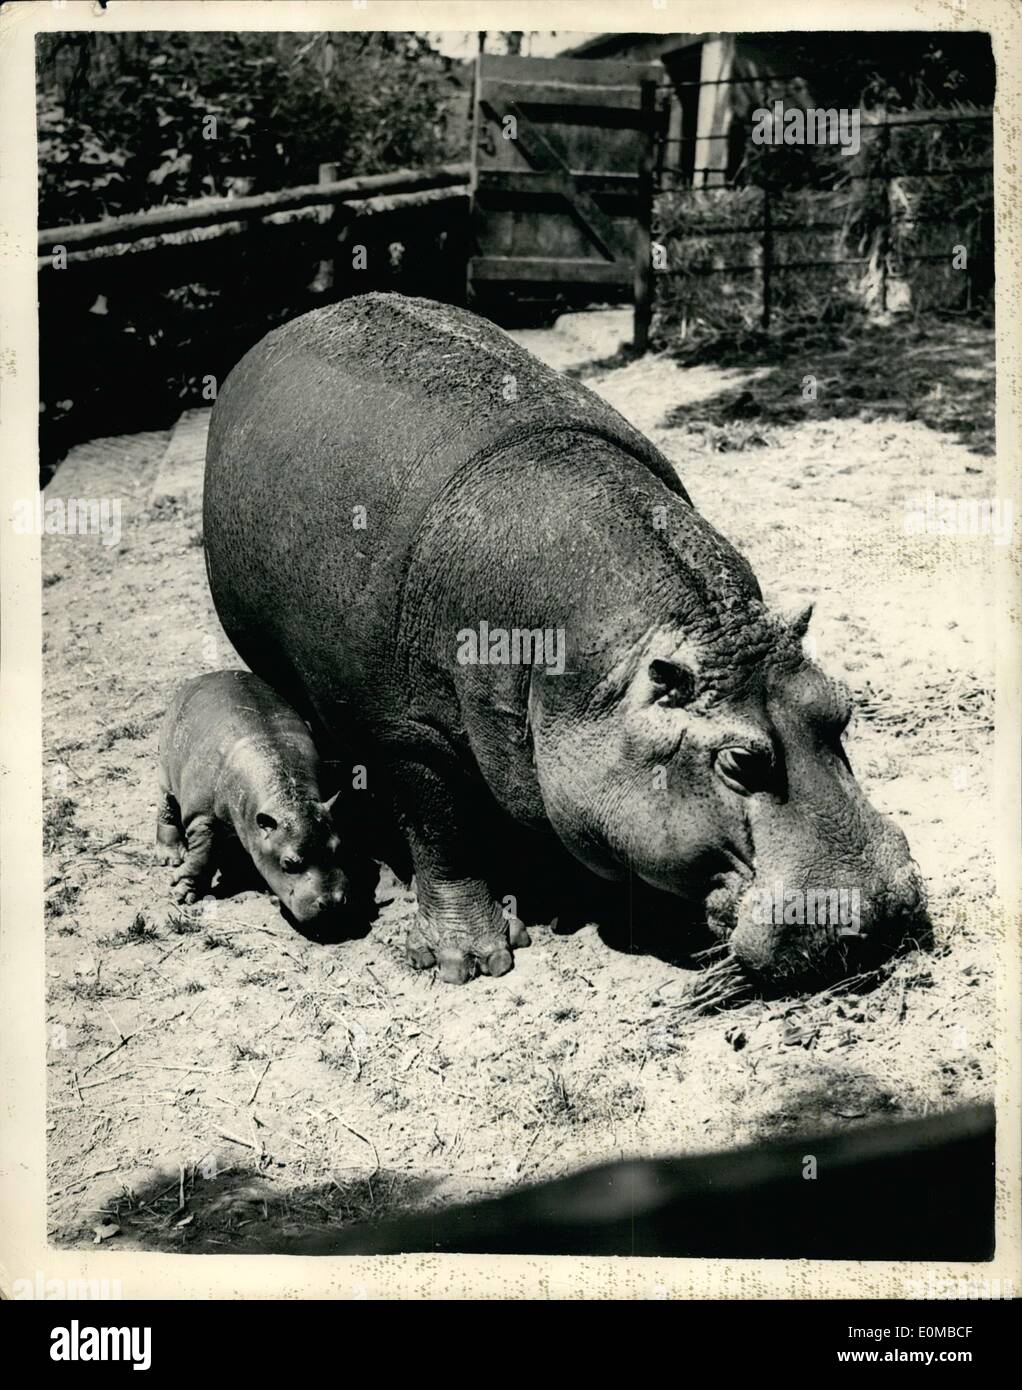 Juin 04, 1954 - 4-6-54 Premières images d'Hippopotamus veau né à Whipsnade. Le bébé hippopotame, né au zoo de Whipsnade il y a trois semaines, a fait sa première apparition publique aujourd'hui avec sa mère Belinda. Les parents sont venus en août de Whipsnade, 1950, lorsqu'ils étaient moitié-cultivé. Le nom du père de Henry. Photo montre : Belinda montre fièrement son jeune fils au public sur sa première sortie aujourd'hui. Banque D'Images